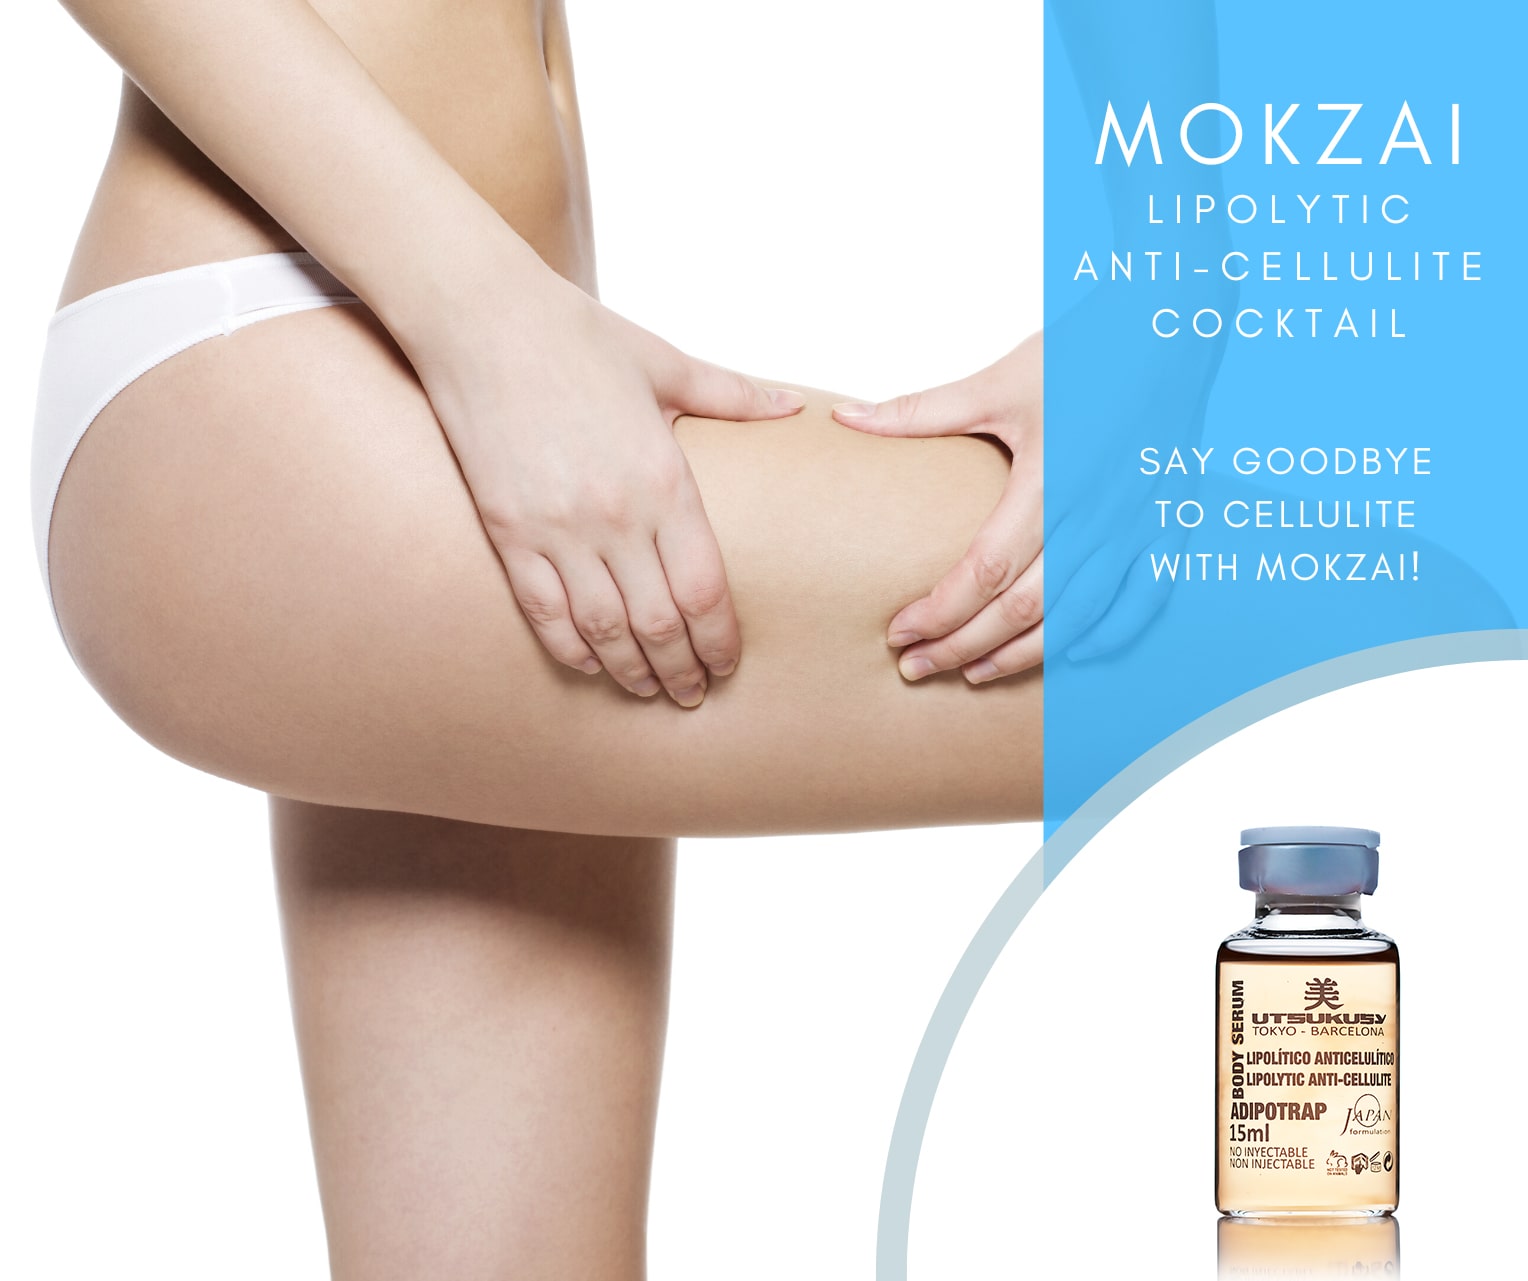 Mokzai Lipolytic Anti-Cellulite Cocktail